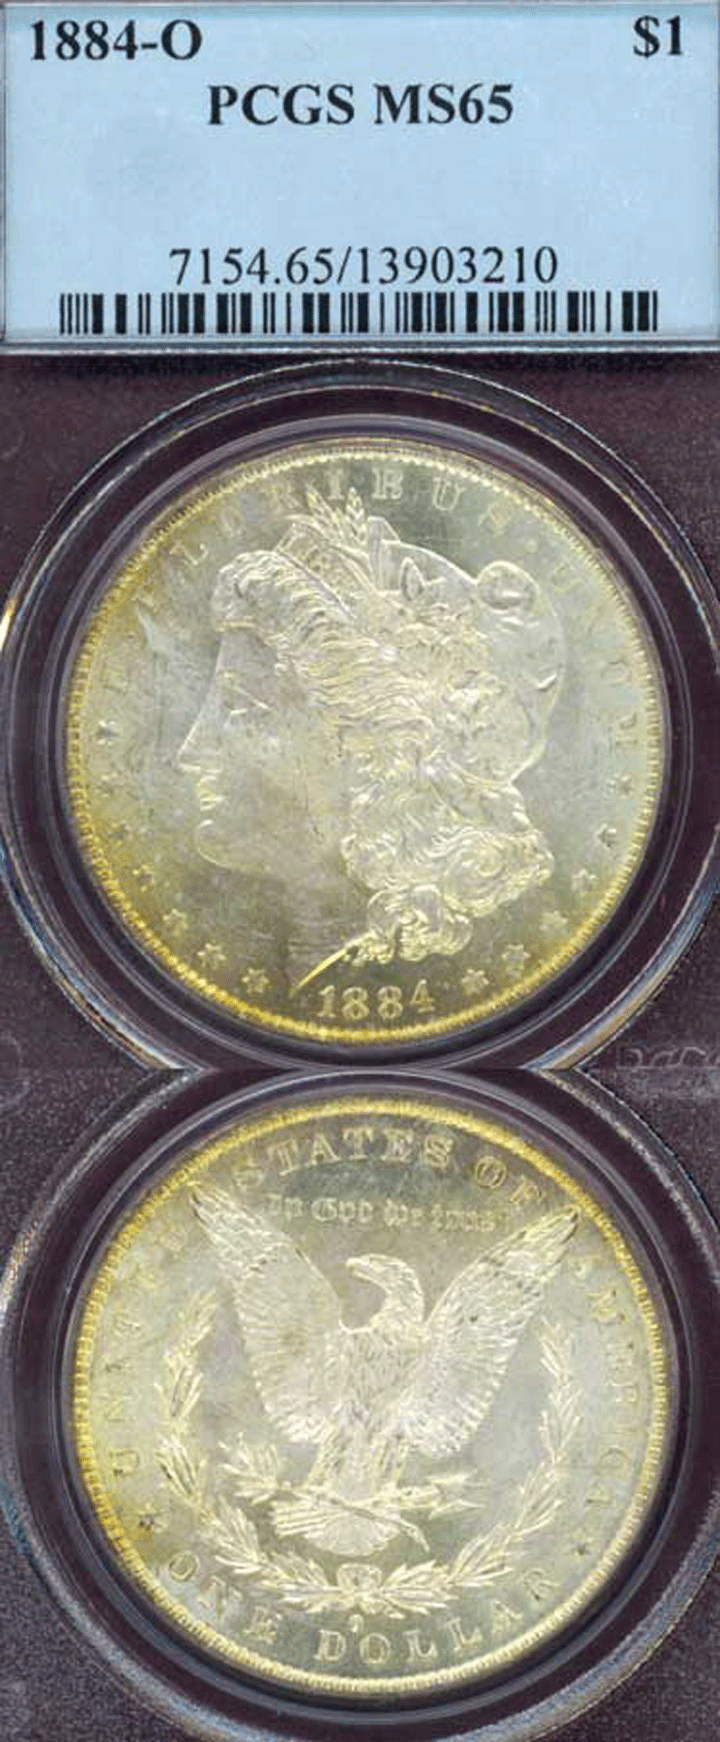 1884-O $ PCGS MS-65 Vam 4